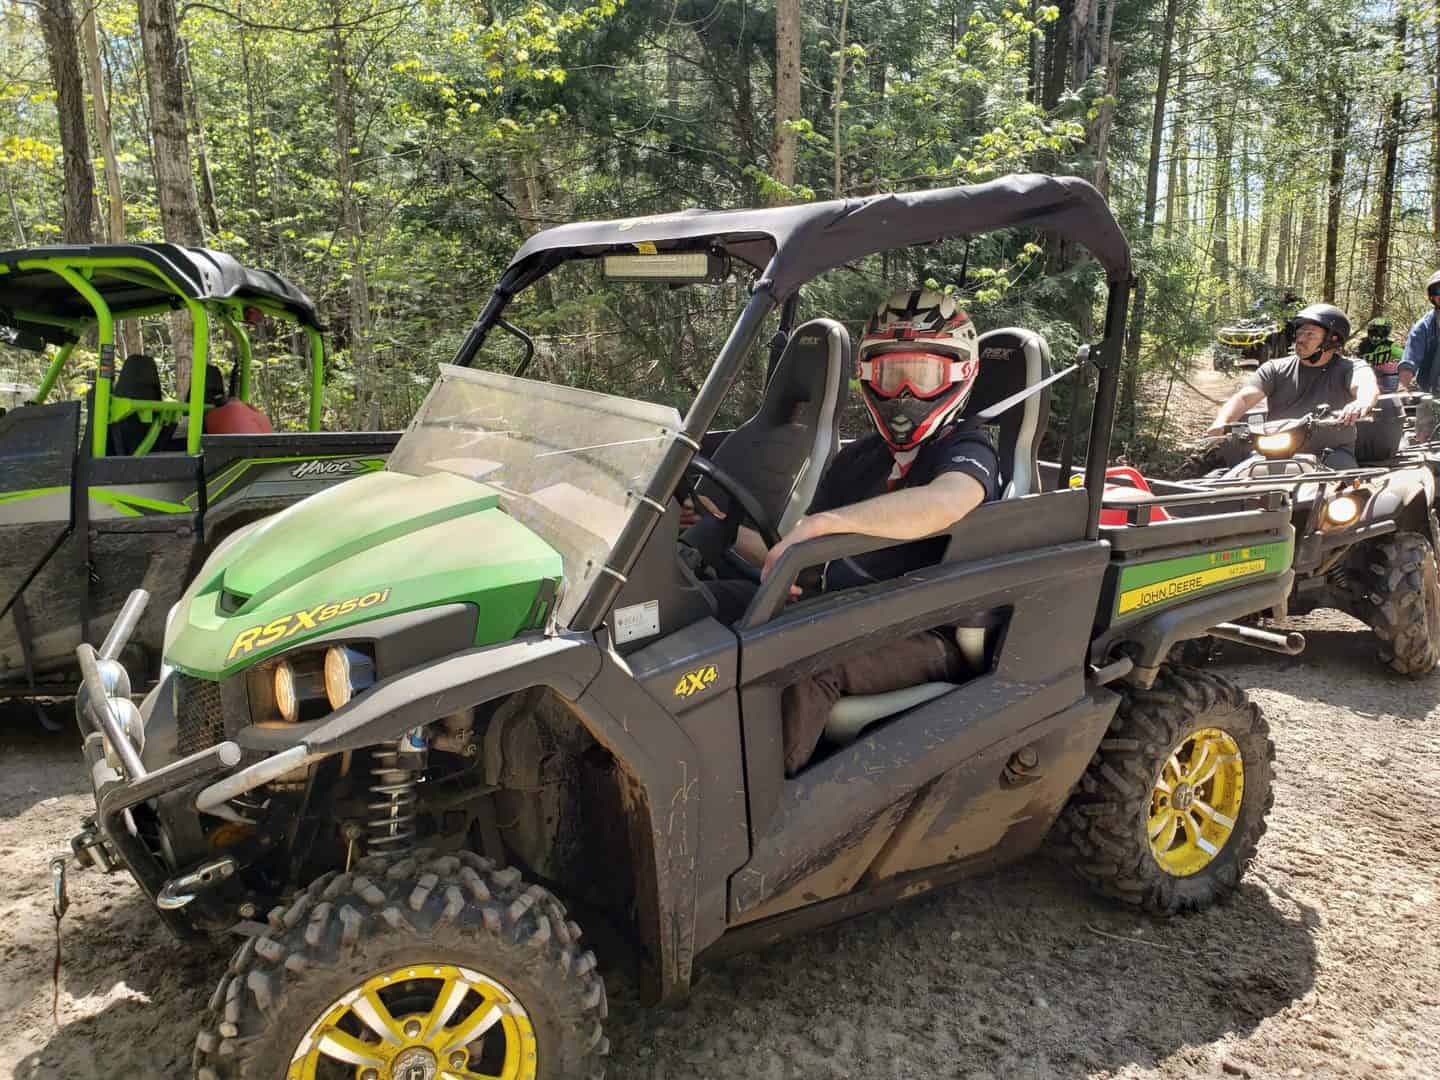 ATV Trails Ontario